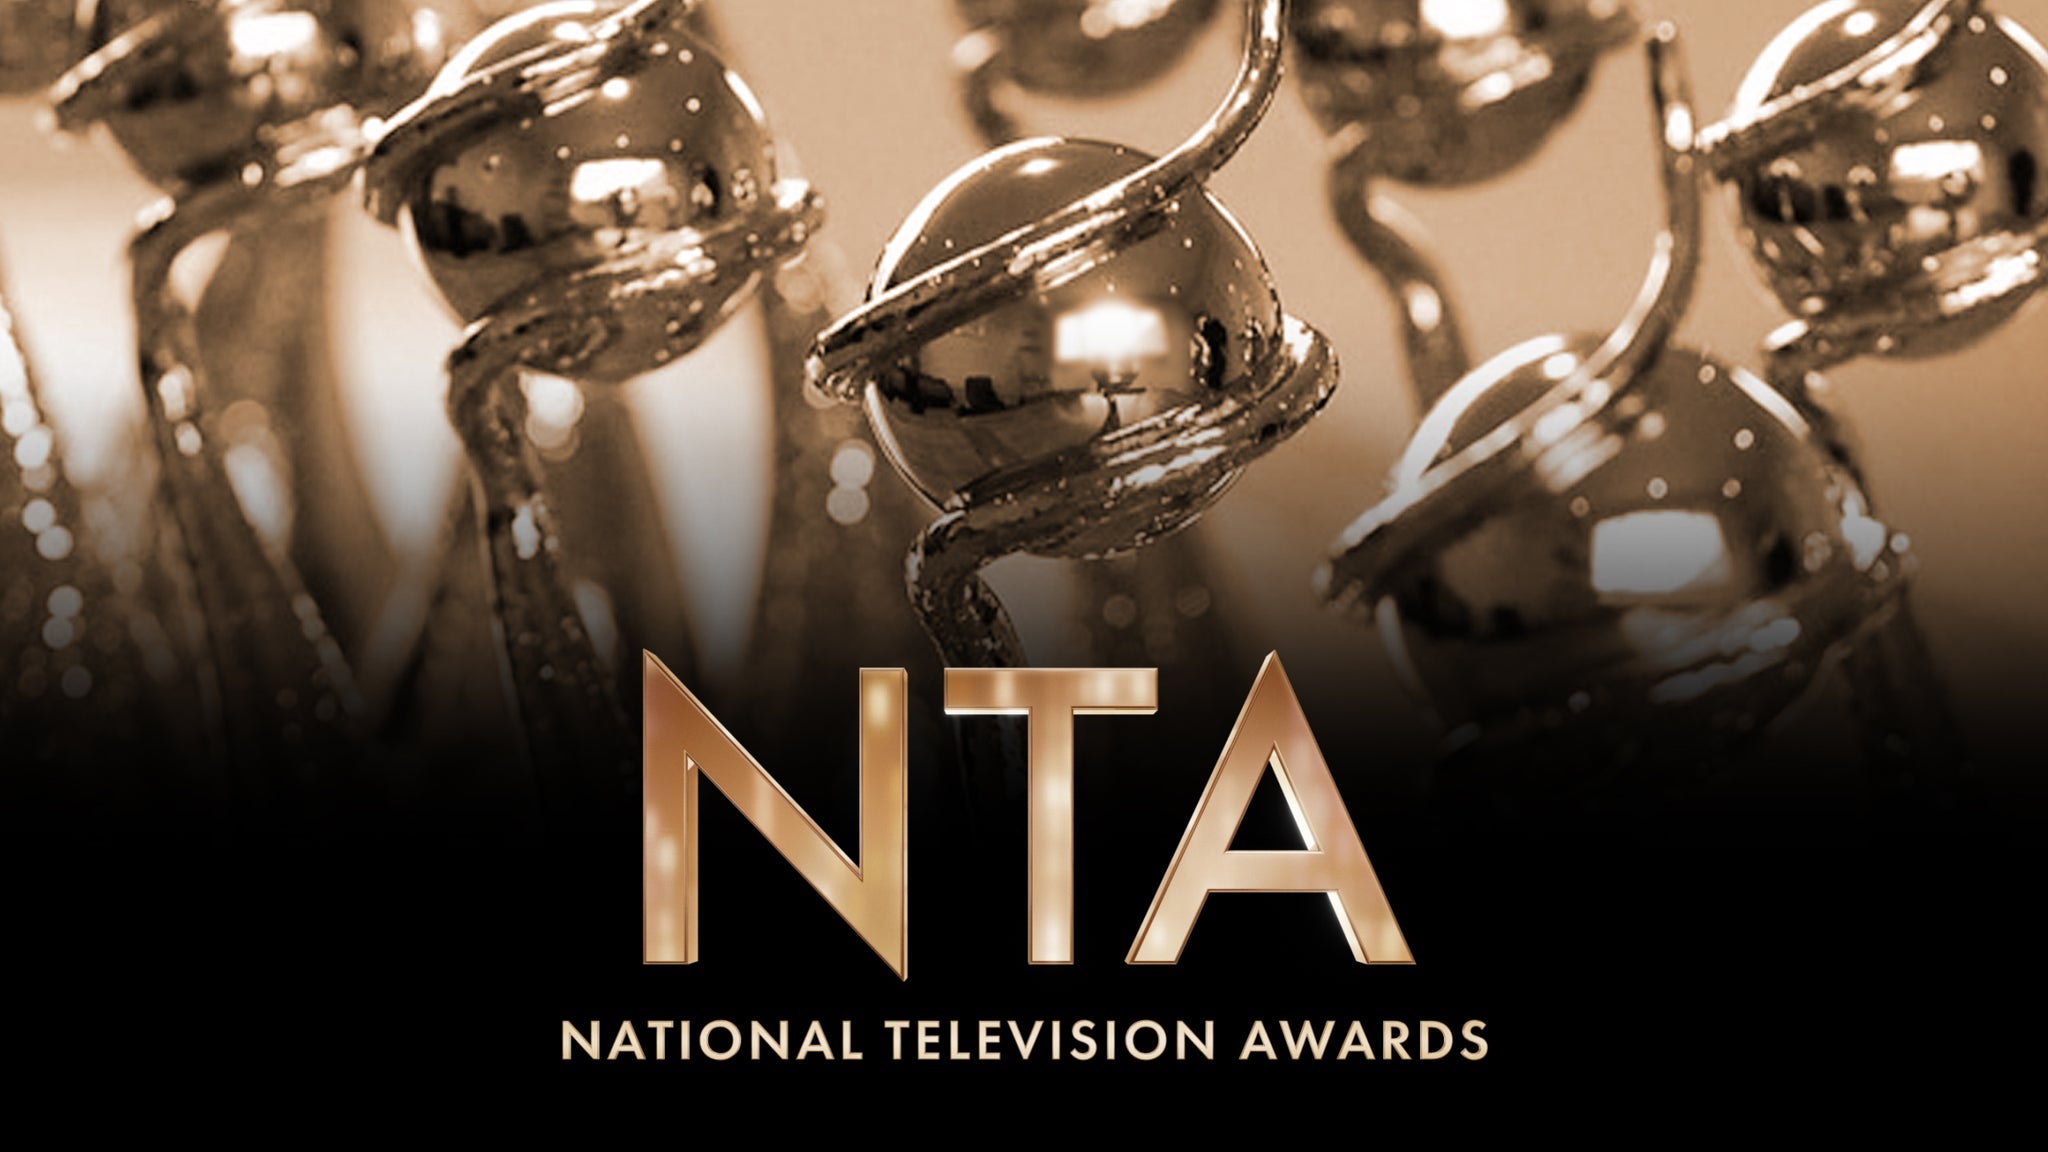 National TV Awards presale information on freepresalepasswords.com